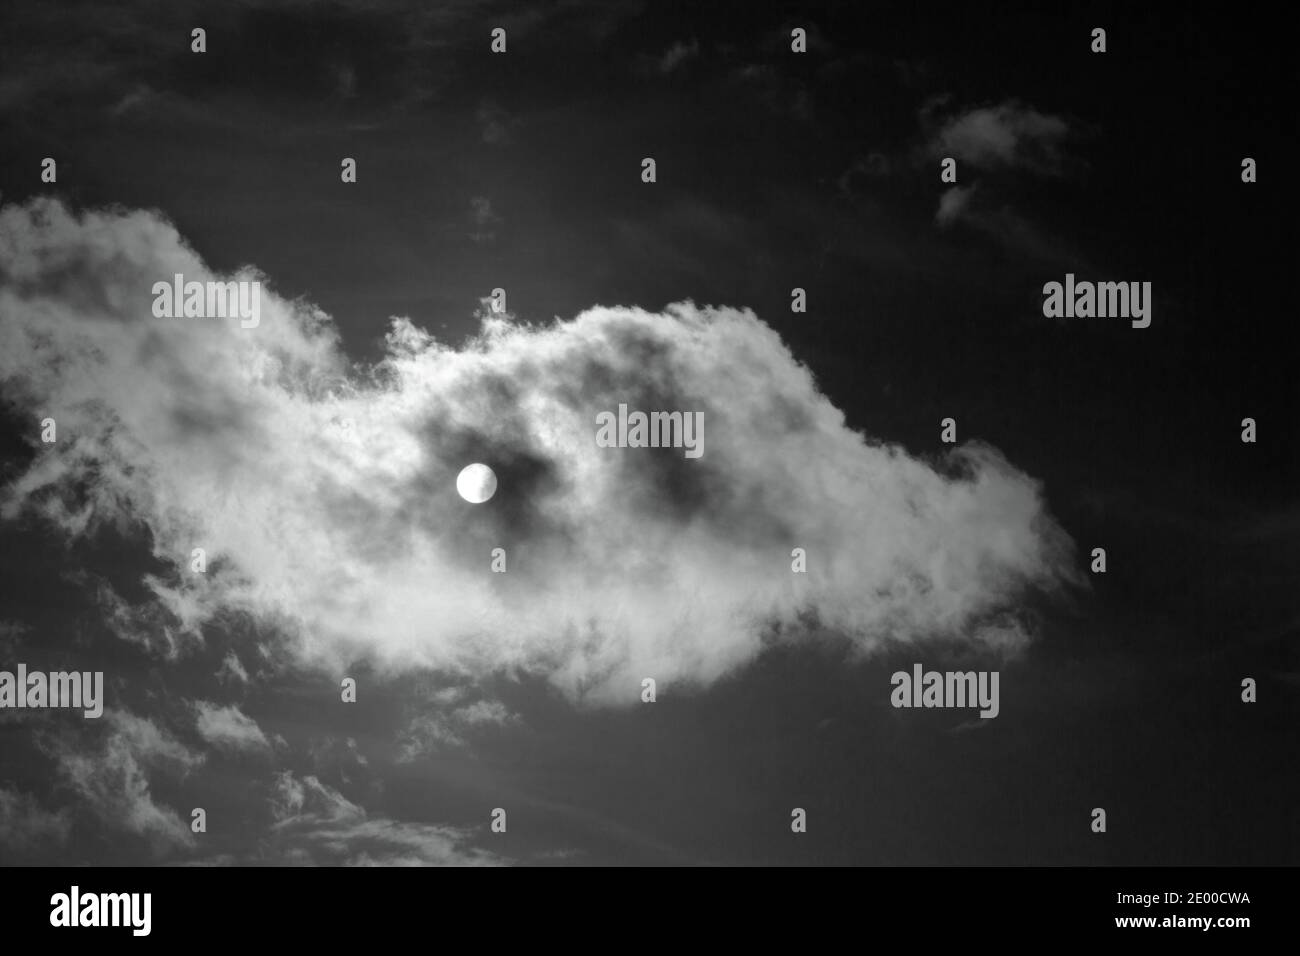 Soleil masqué par un nuage passant.Image mono Banque D'Images